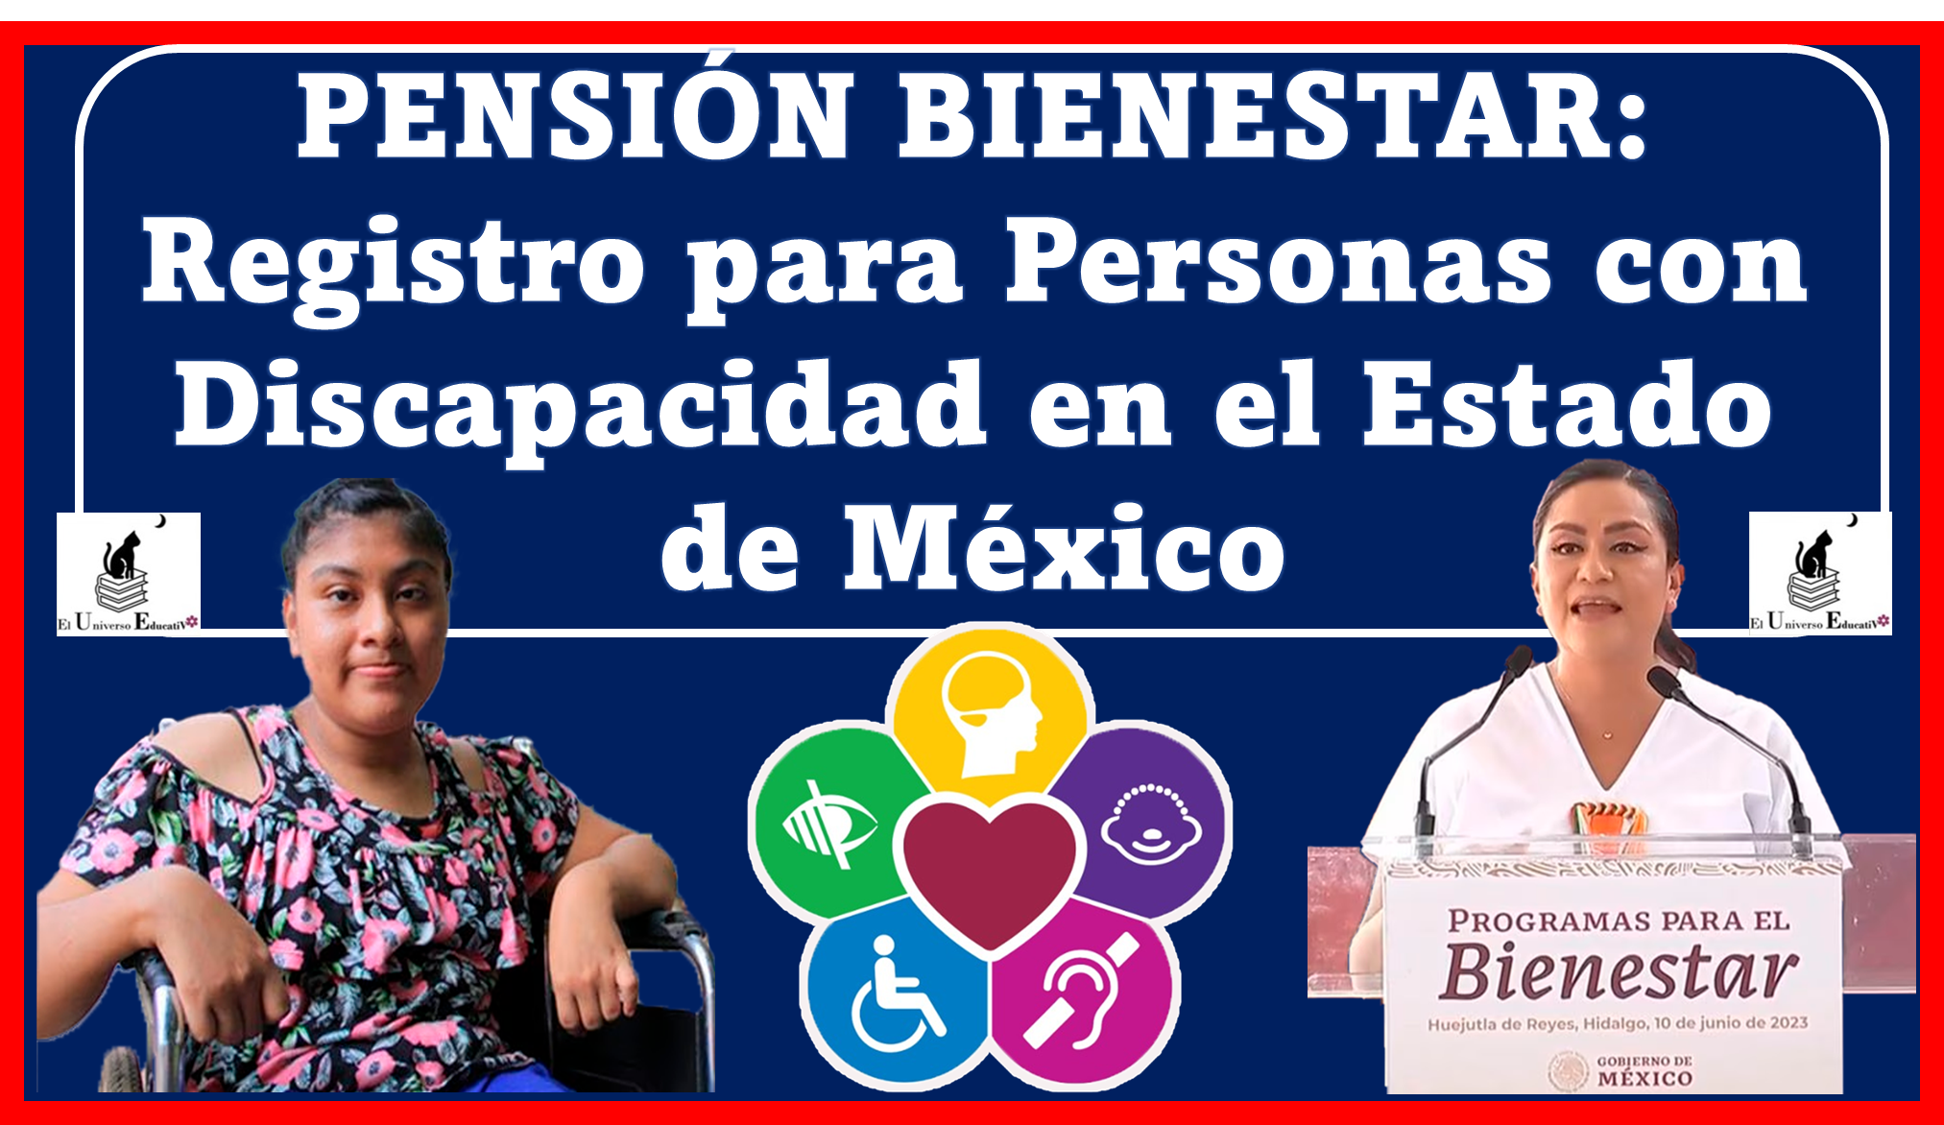 PENSIÓN BIENESTAR: Registro para Personas con Discapacidad en el Estado de México